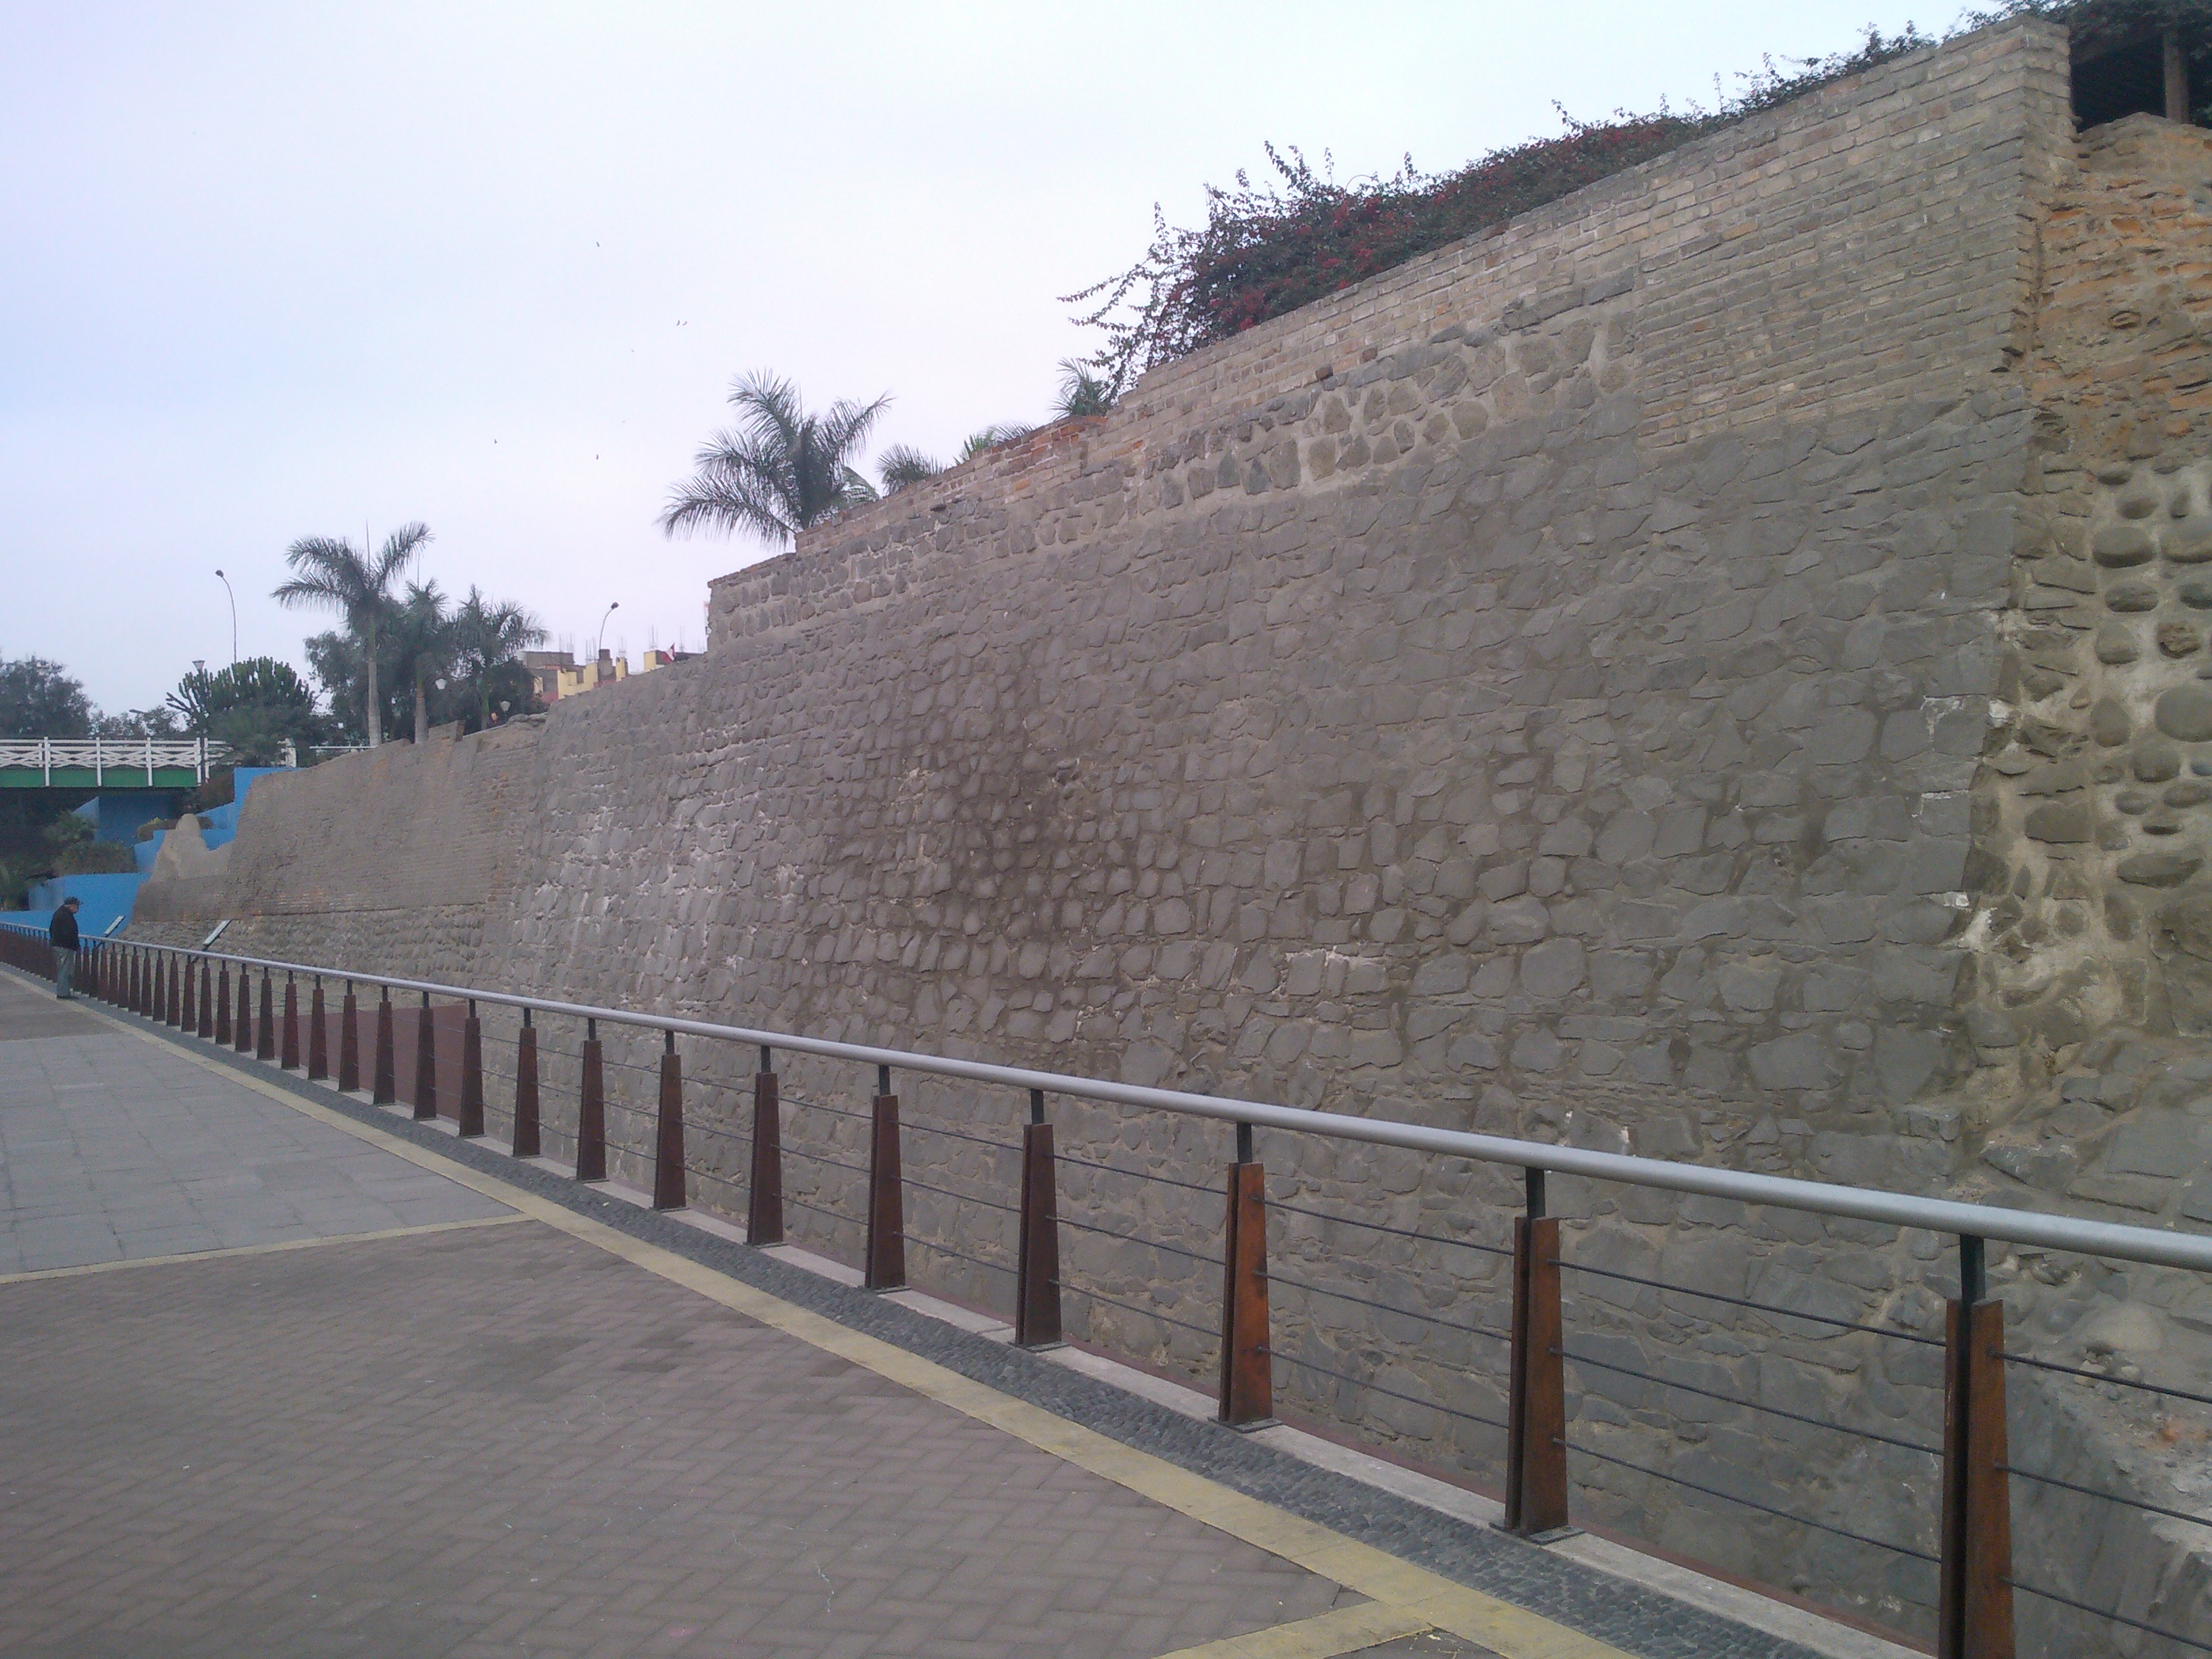 Cuanto mide la muralla china